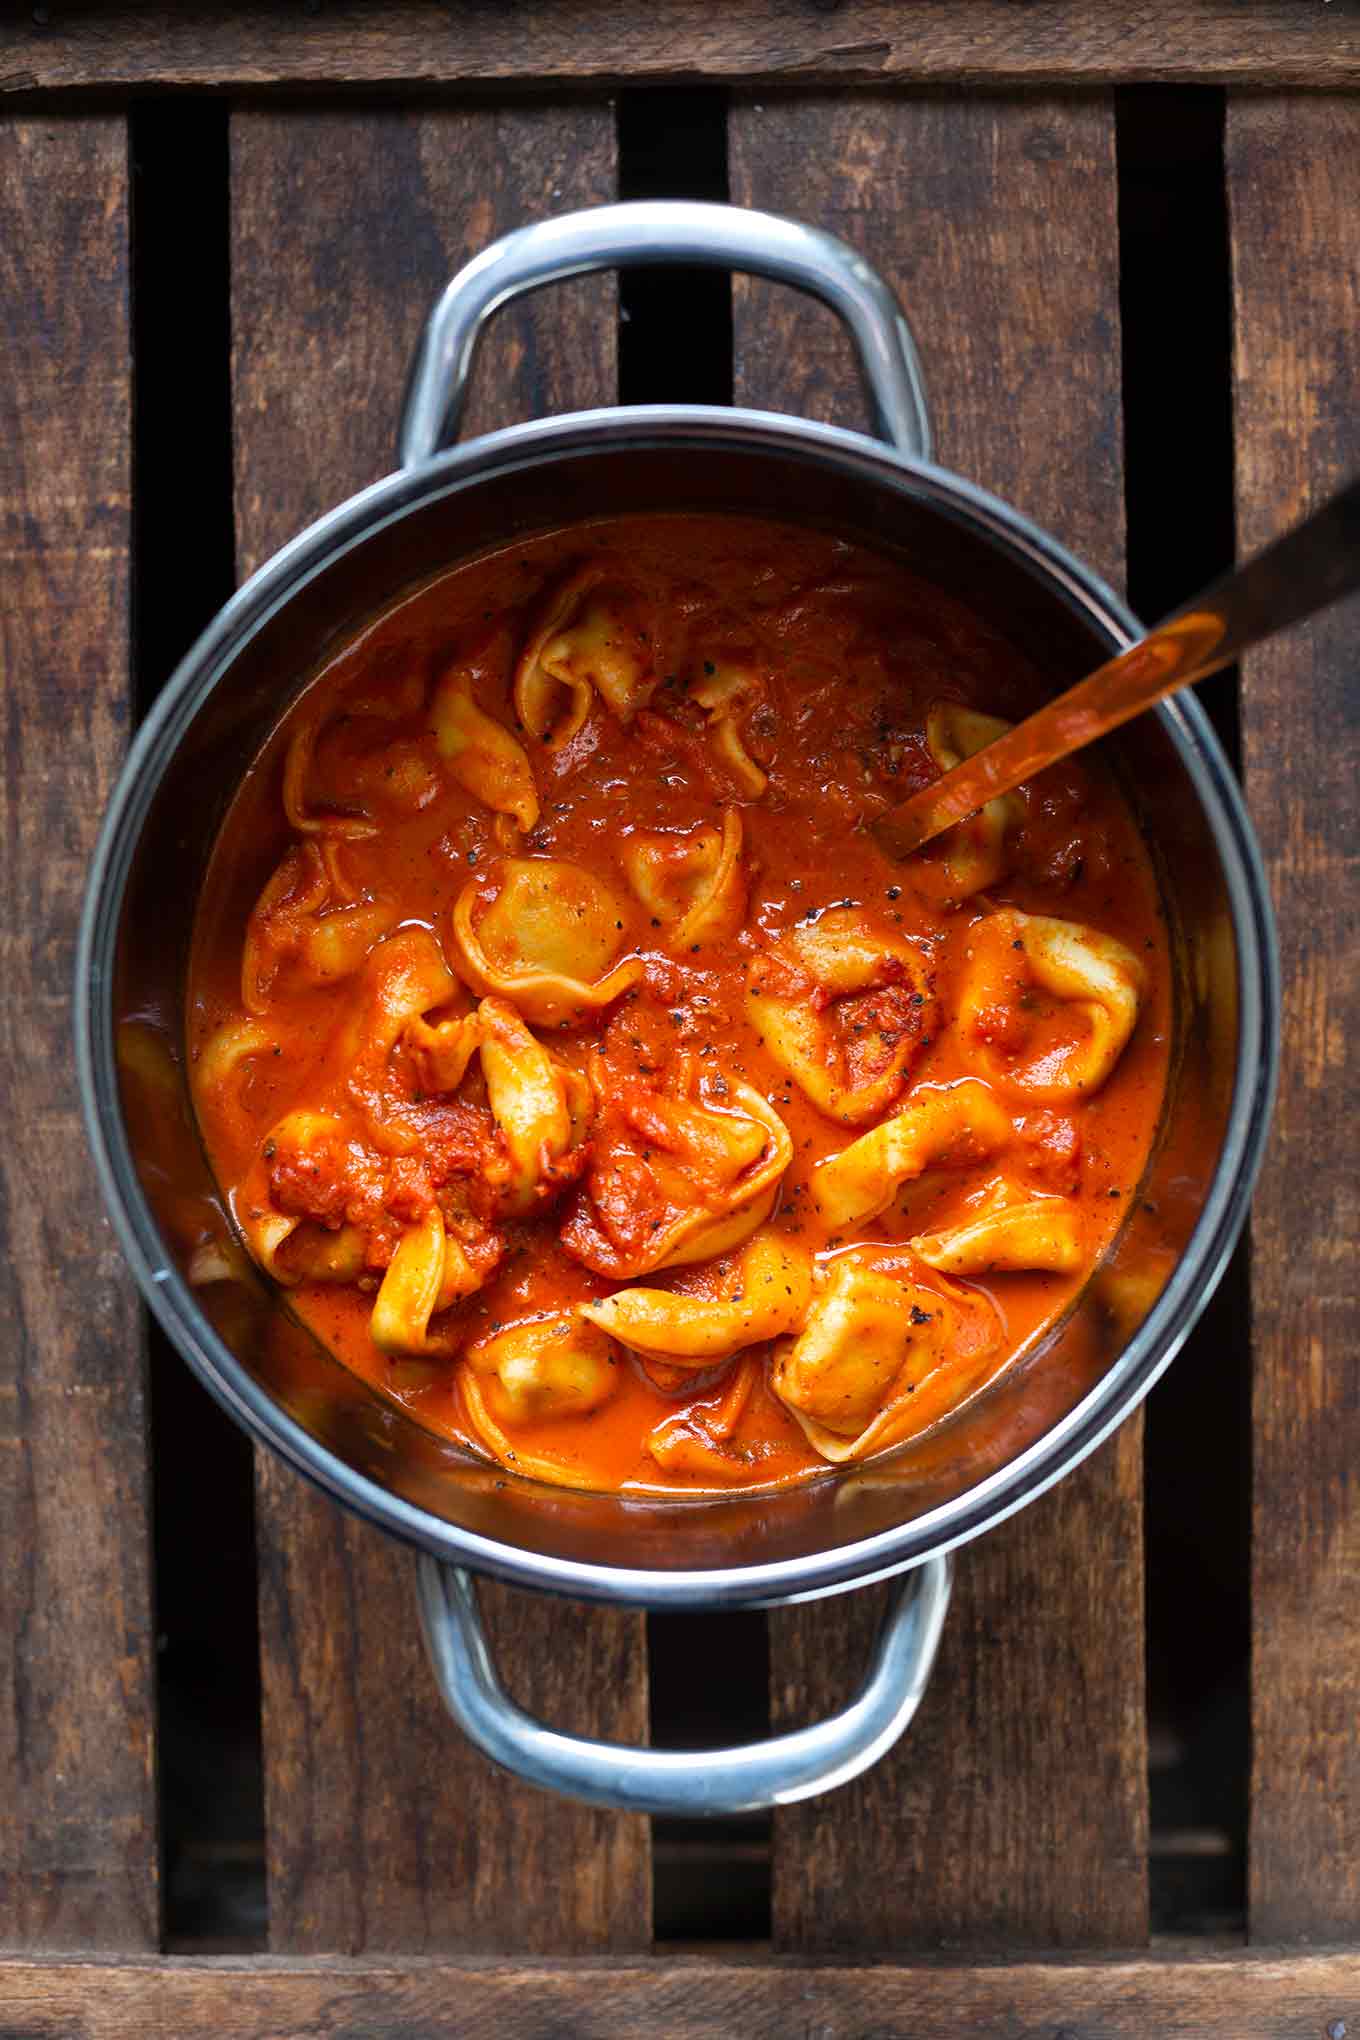 One Pot Tortellini mit Tomaten-Sahne-Sauce. Dieses vegetarische Rezept ist super einfach, schnell und SO gut! - Kochkarussell.com #onepot #tortellini #soulfood #kochkarussell